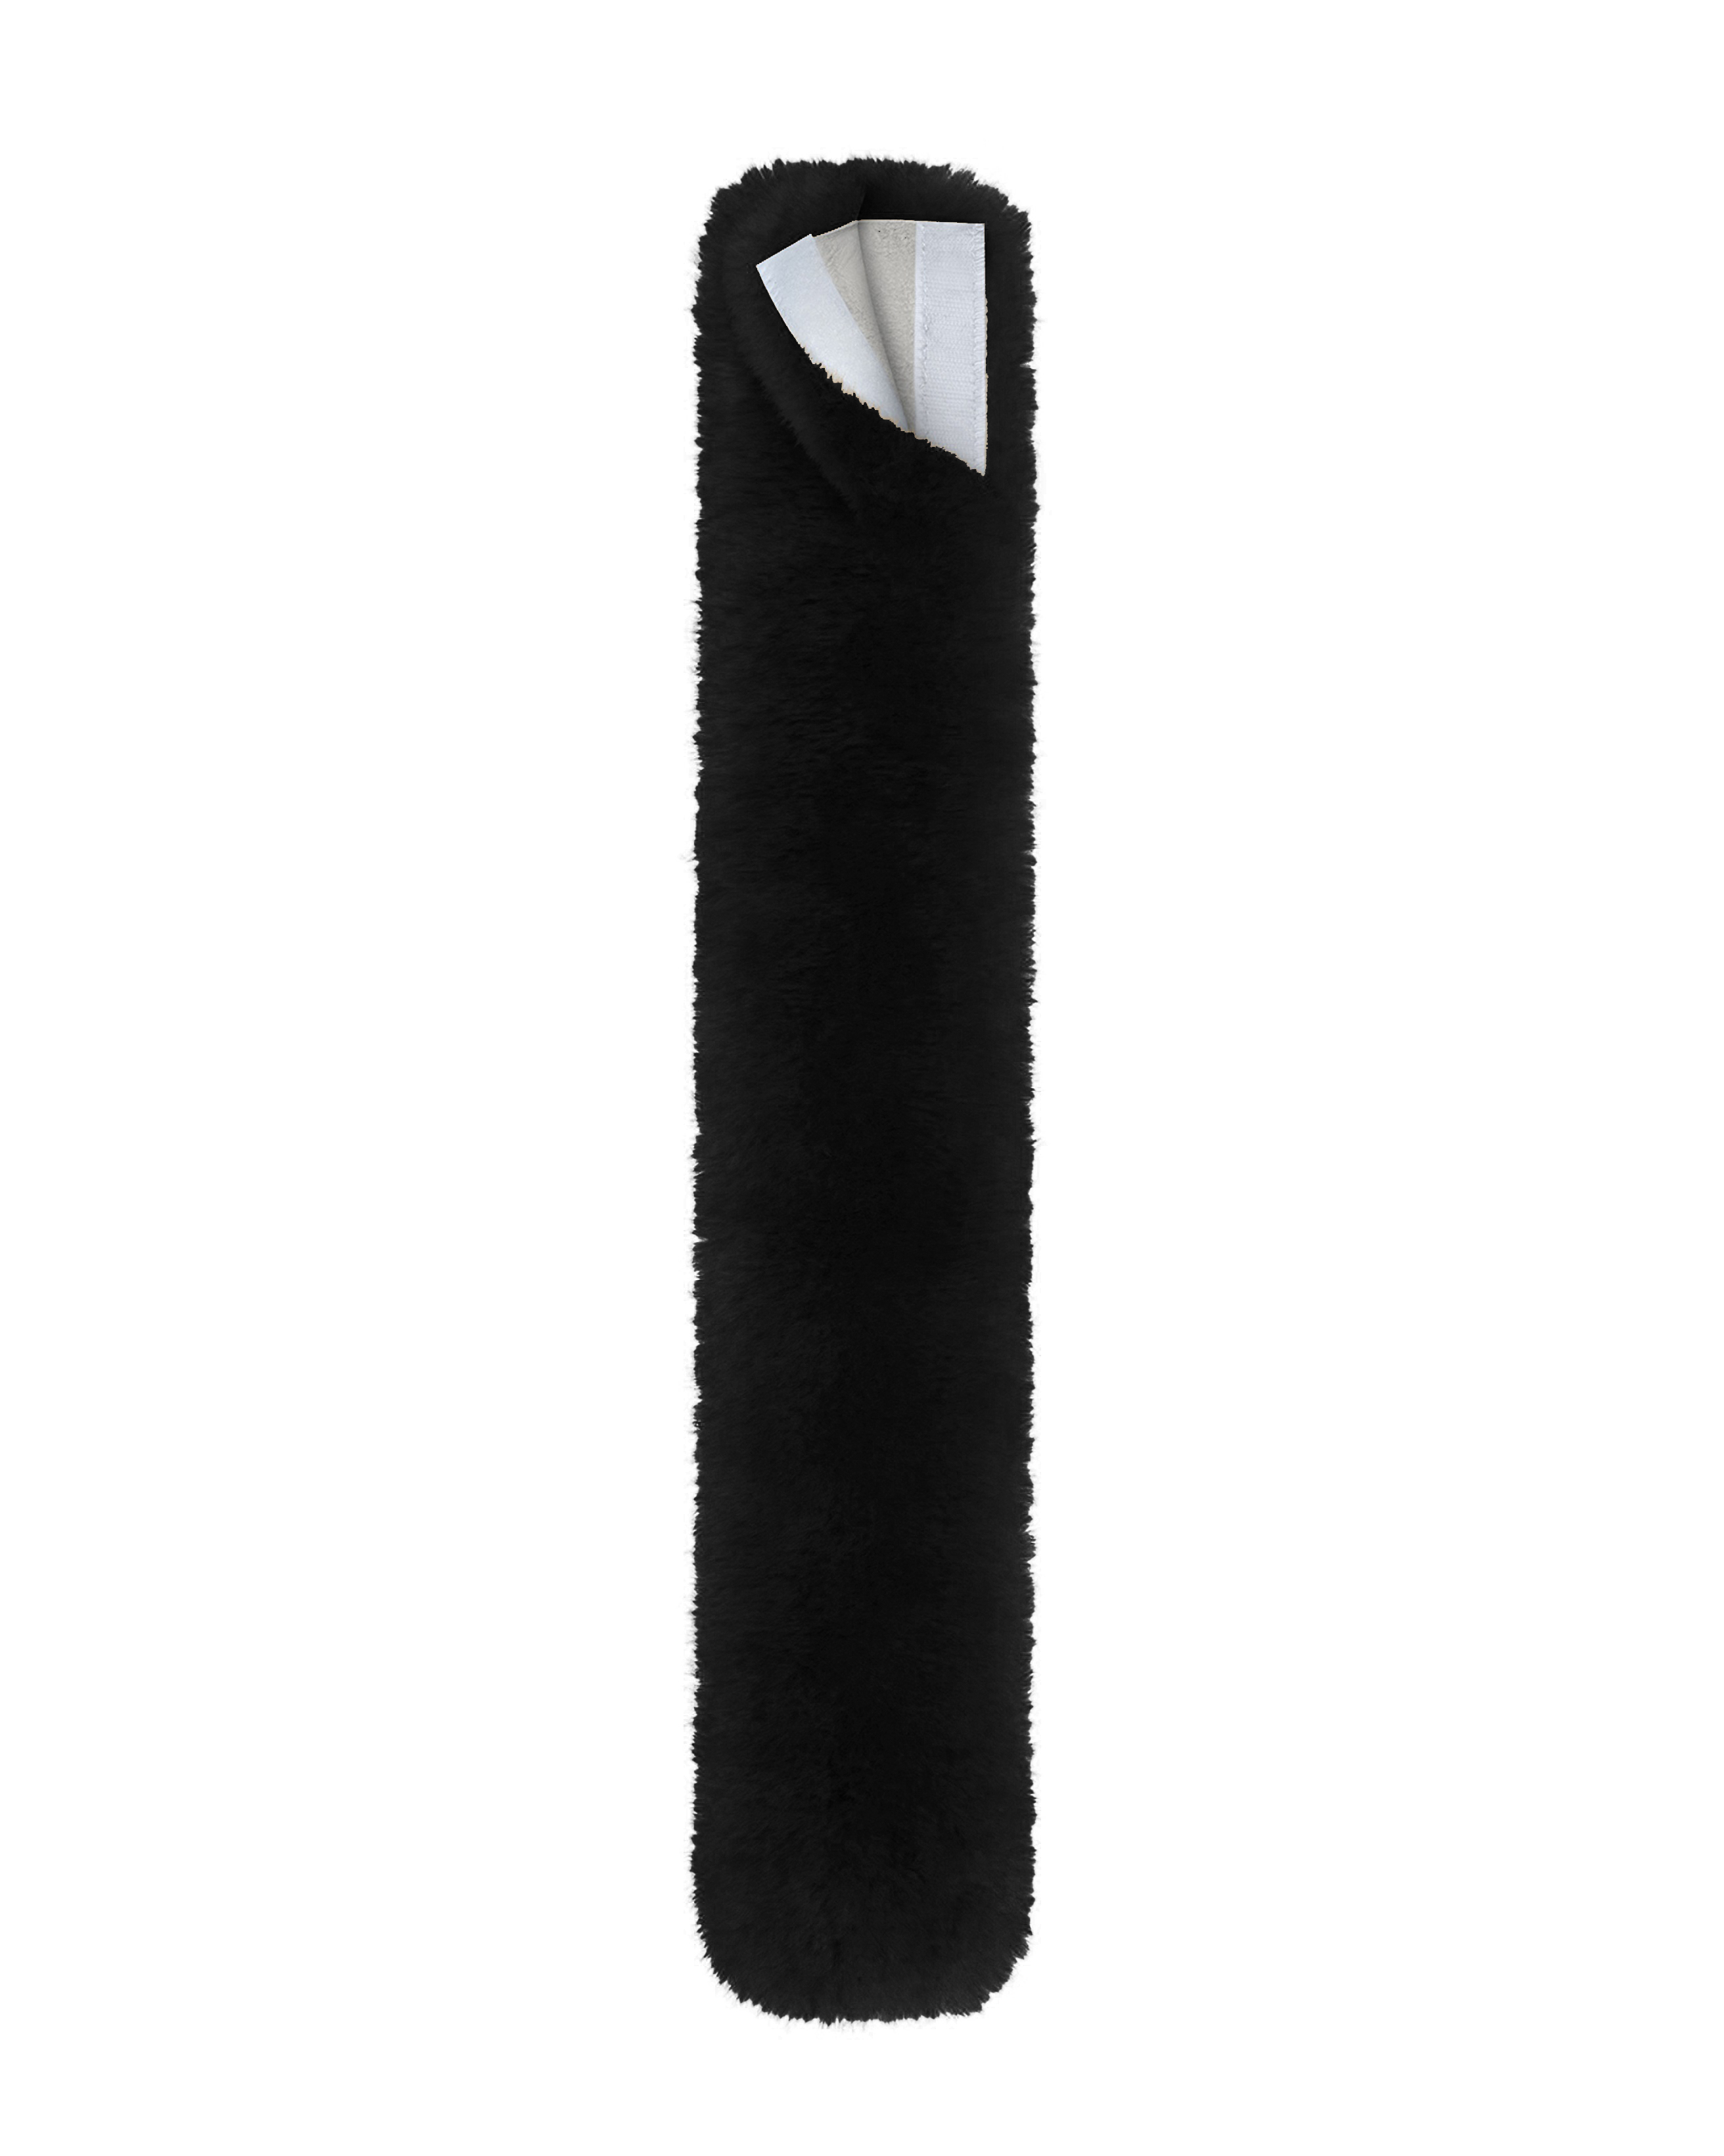 Vorderzeugbezug Lammfell in schwarz, Größe 70 cm